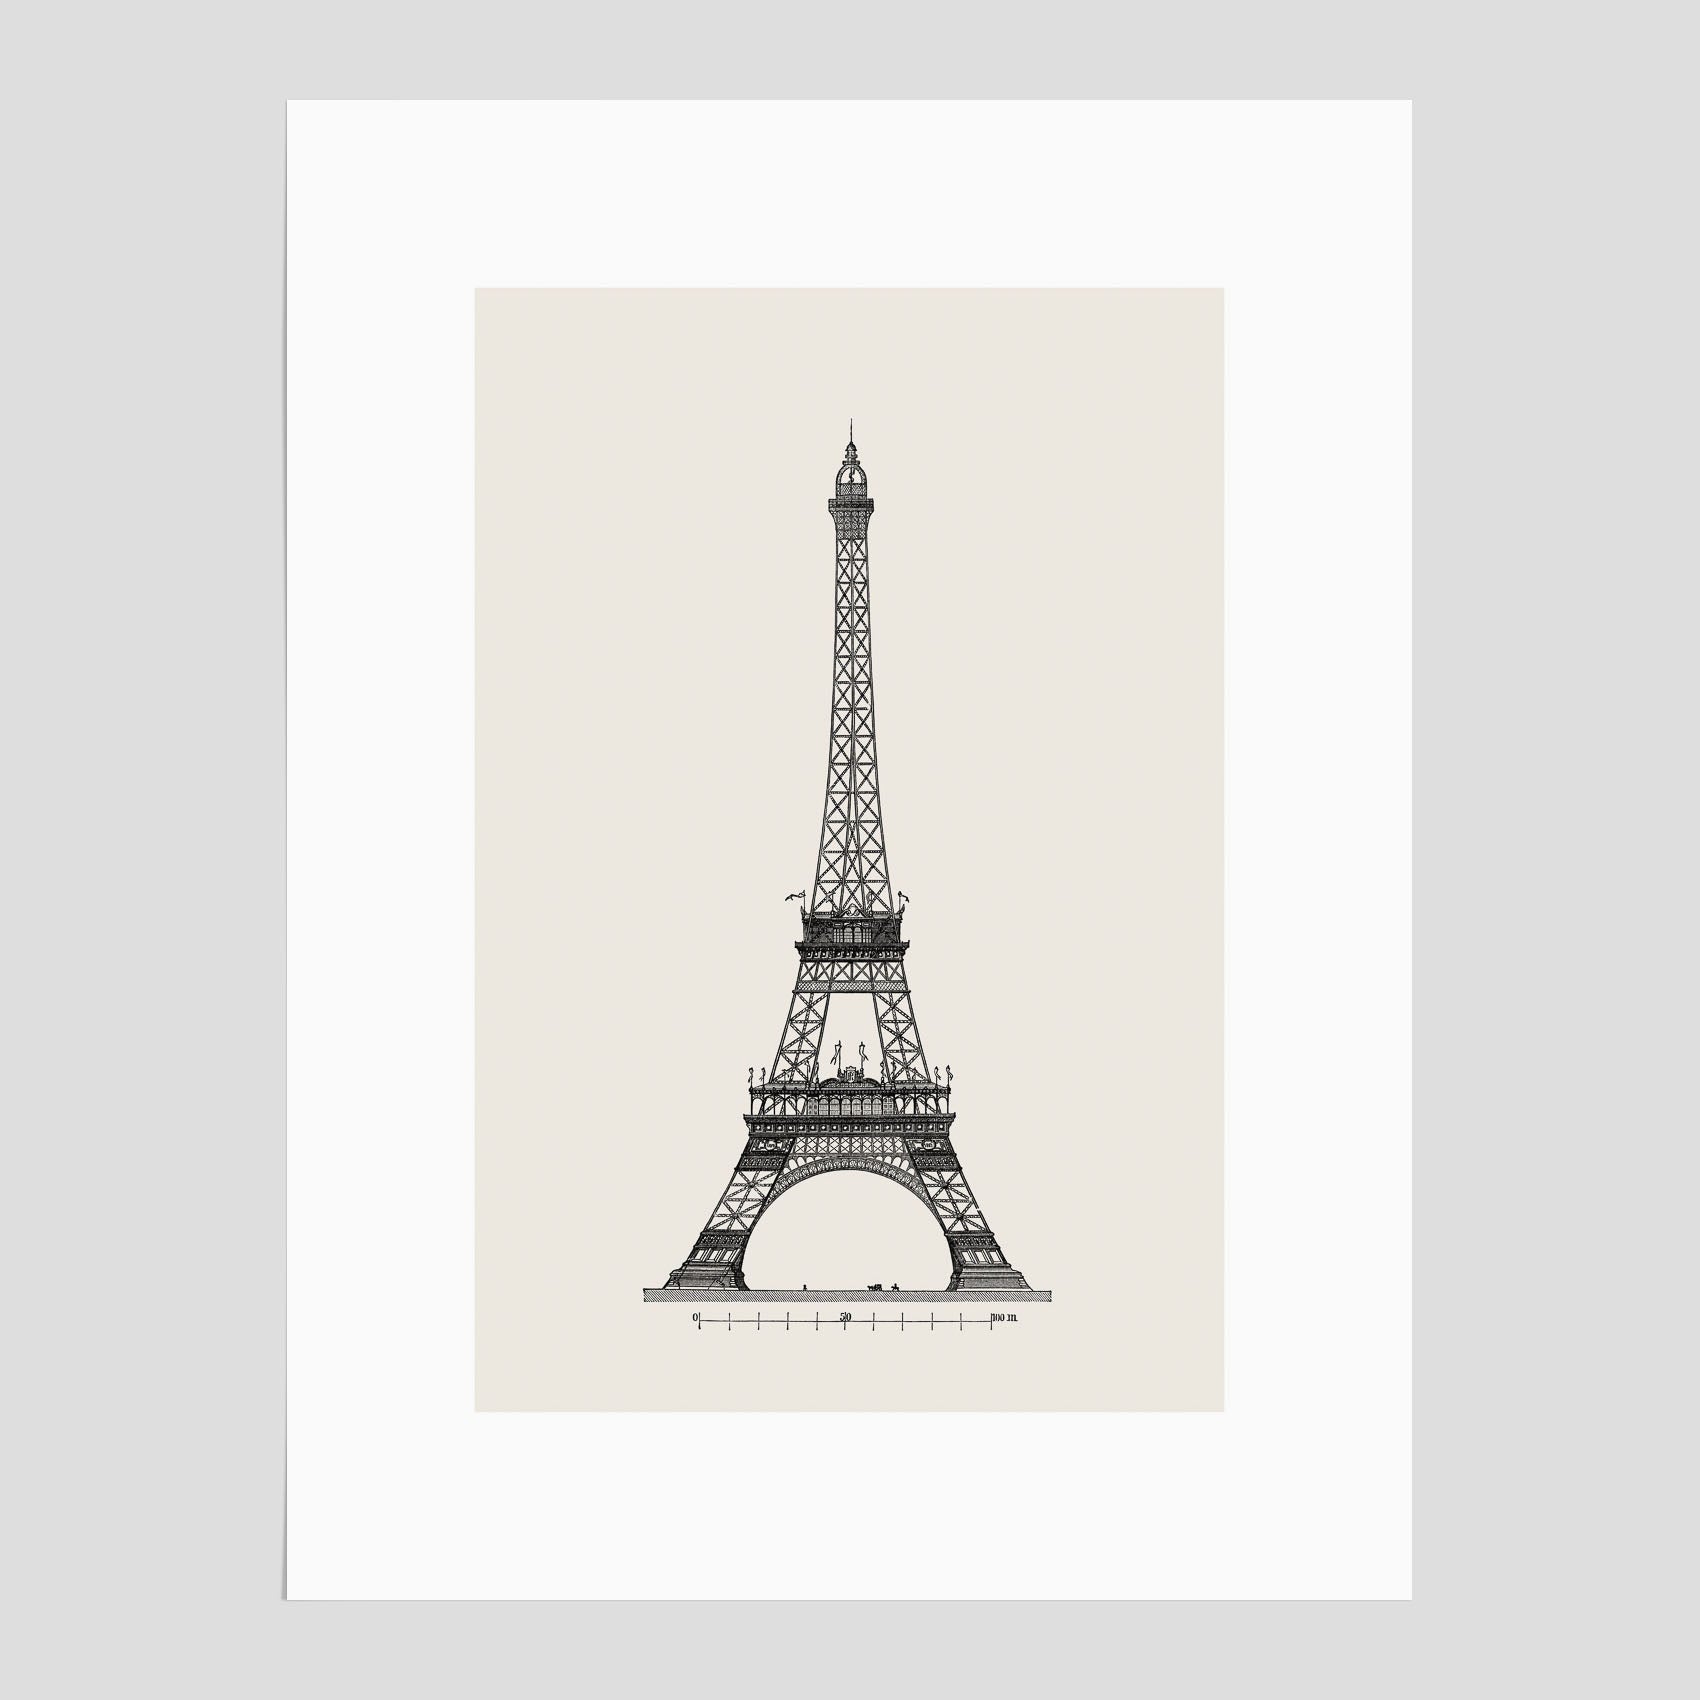 Vintageposter med en illustration av Eiffeltornet i Paris